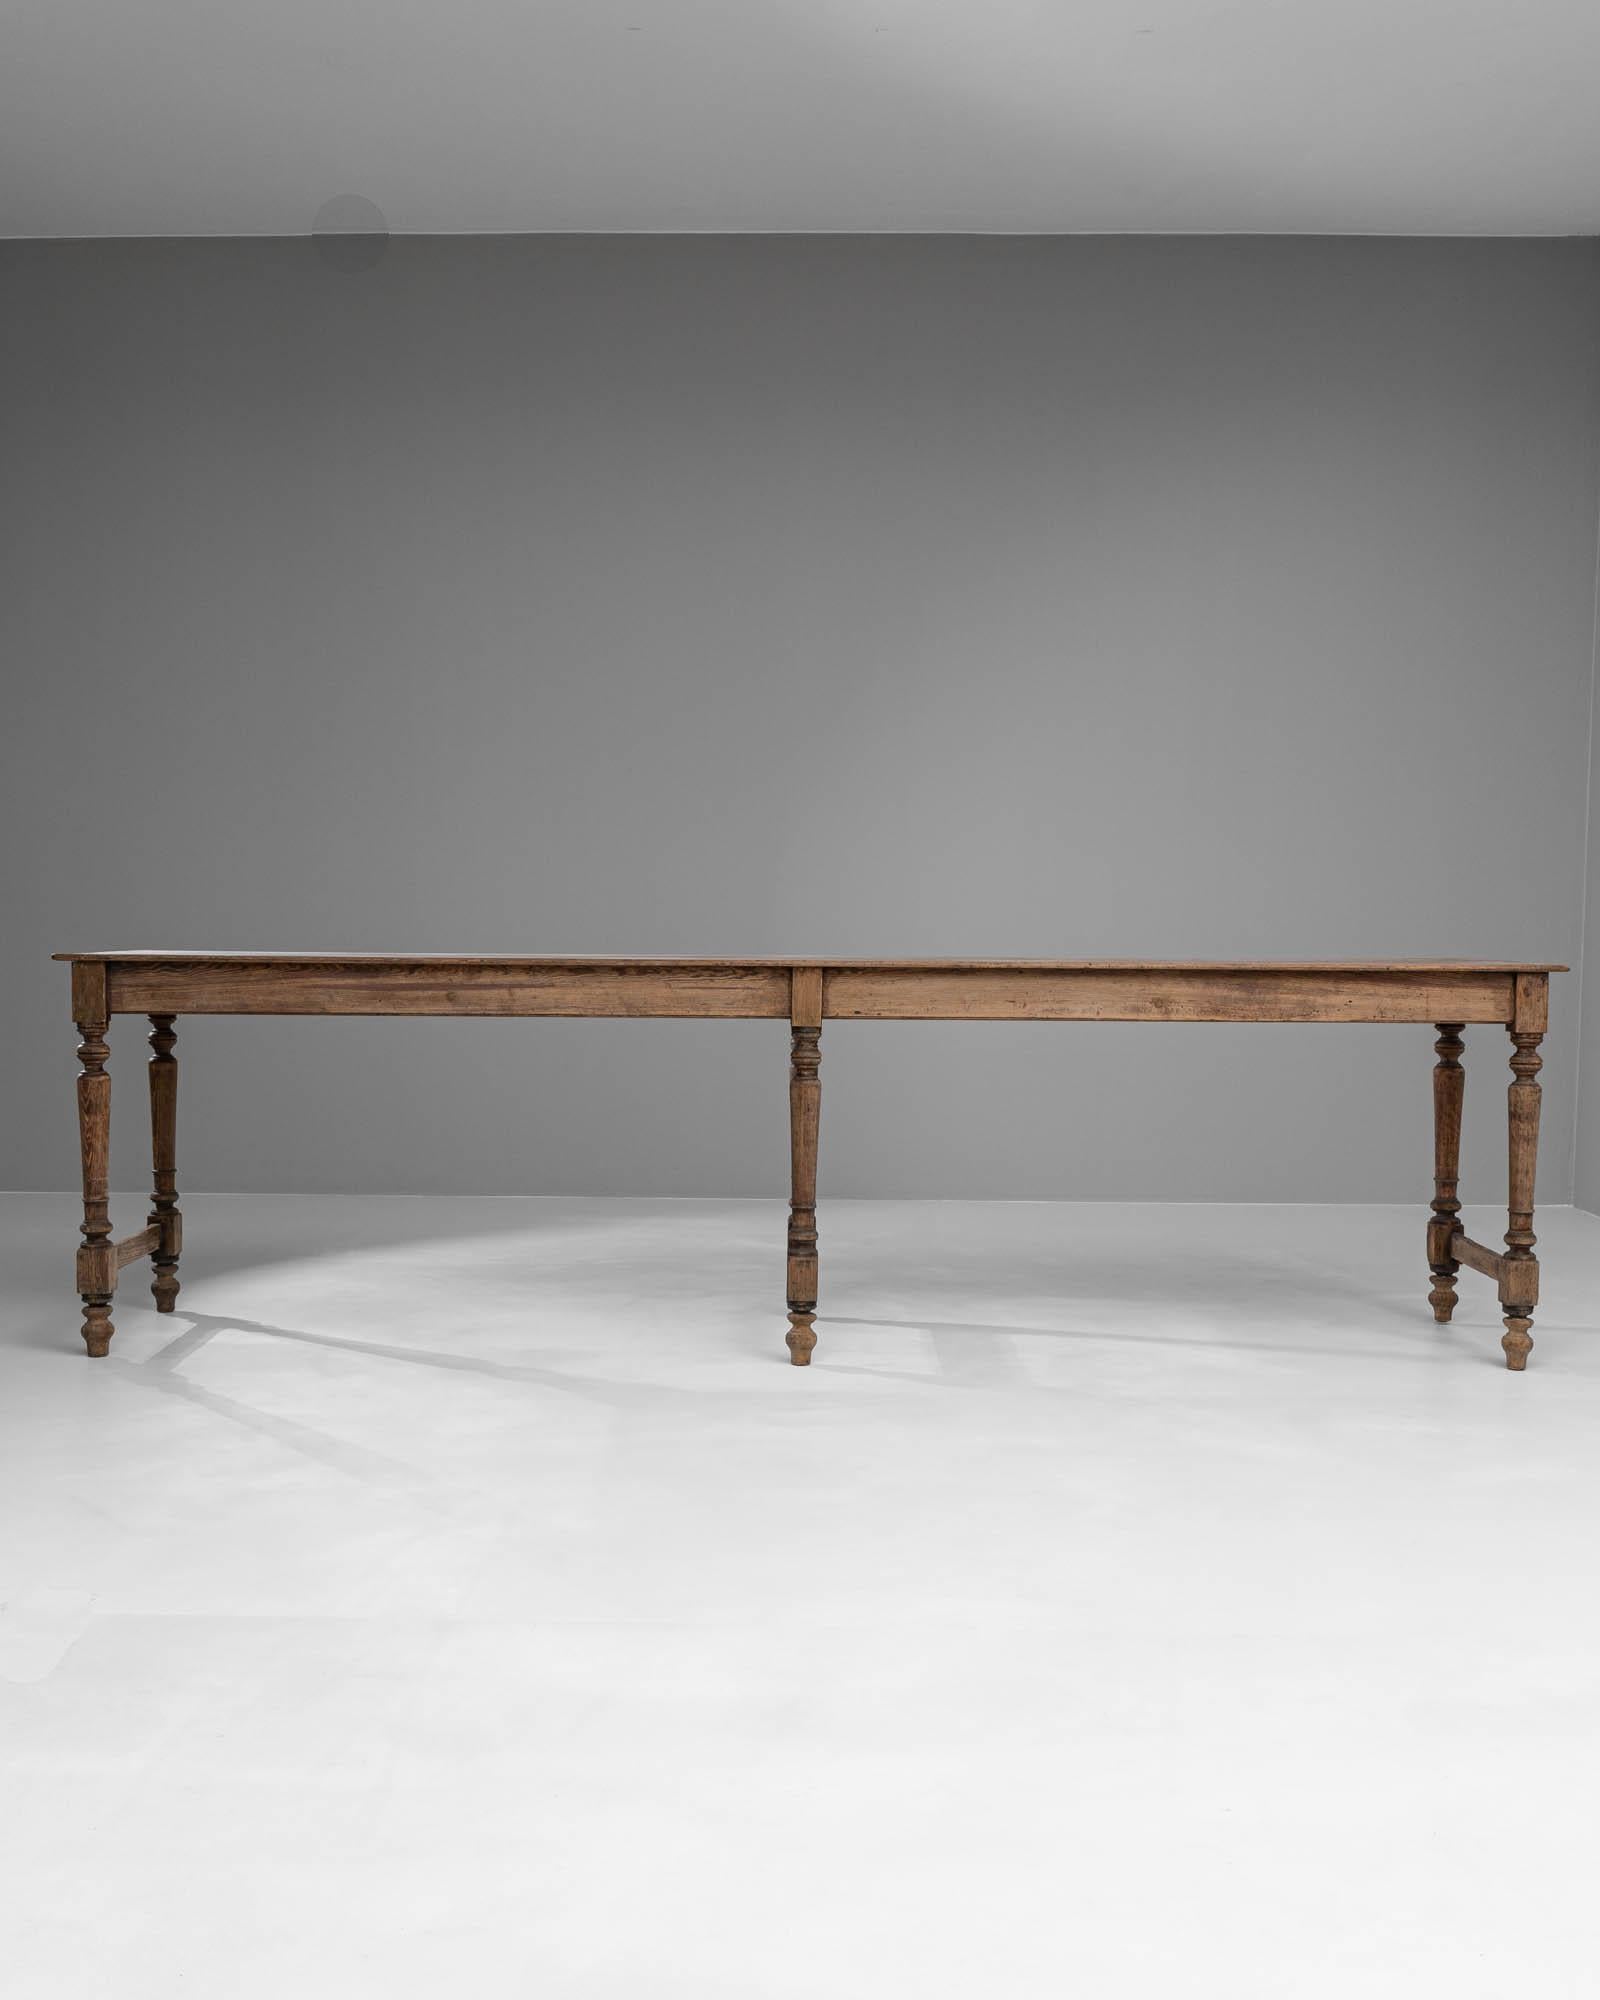 Admirez l'attrait du charme historique avec cette table à manger française en bois du XIXe siècle, une pièce qui exsude l'élégance rustique d'époques révolues. Fabriquée en bois massif, sa longueur importante est soutenue par des pieds finement